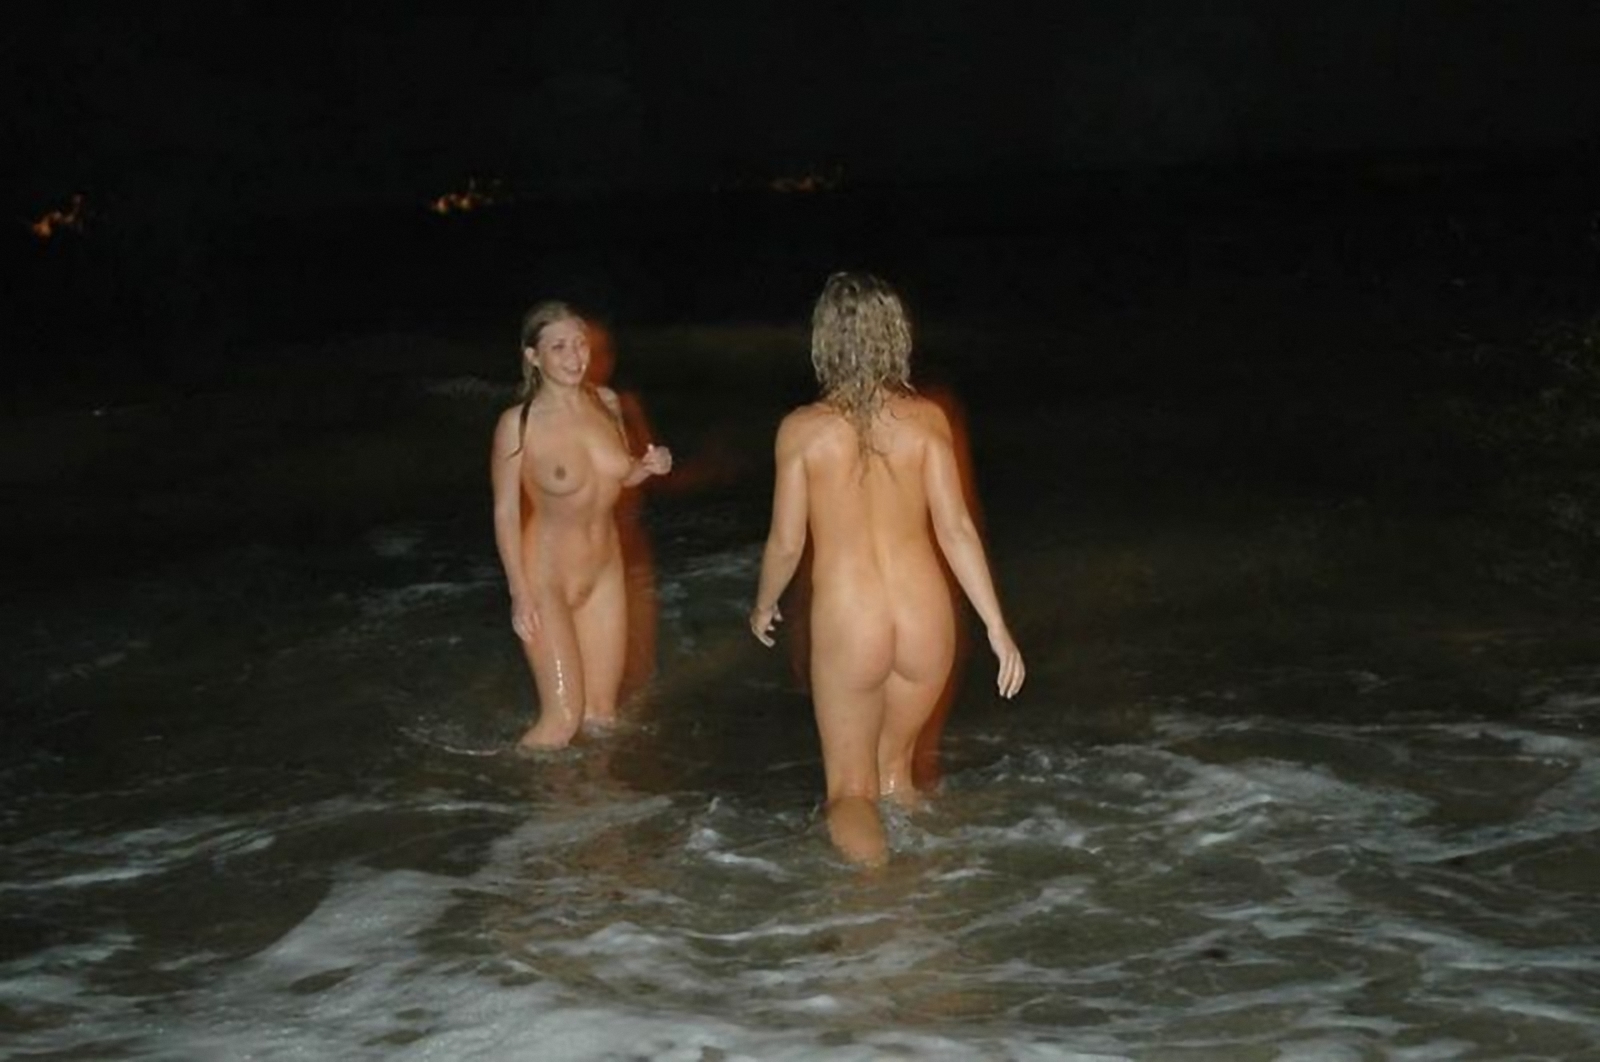 юные купаются голыми видео фото 62